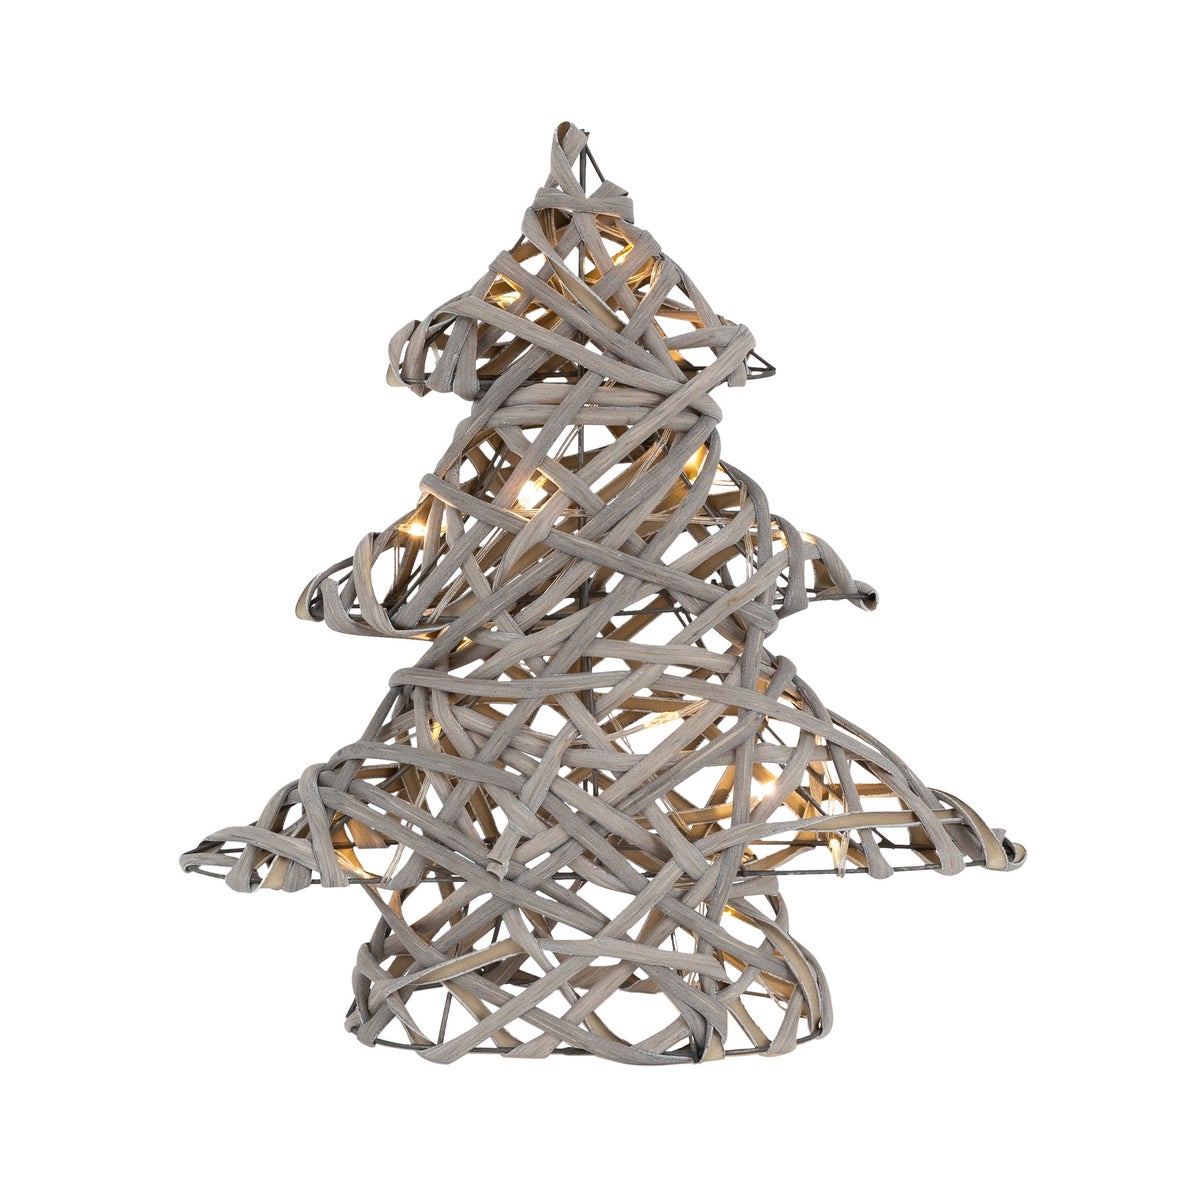 ECD Germany LED Deko Baum Weihnachten mit 15 warmweißen LEDs, 30 cm hoch, Rattan-Metall, Grau, Weihnachtsbaum mit Beleuchtung & Timer, batteriebetrieben, Lichterbaum Tannenbaum stehend Weihnachtsdeko